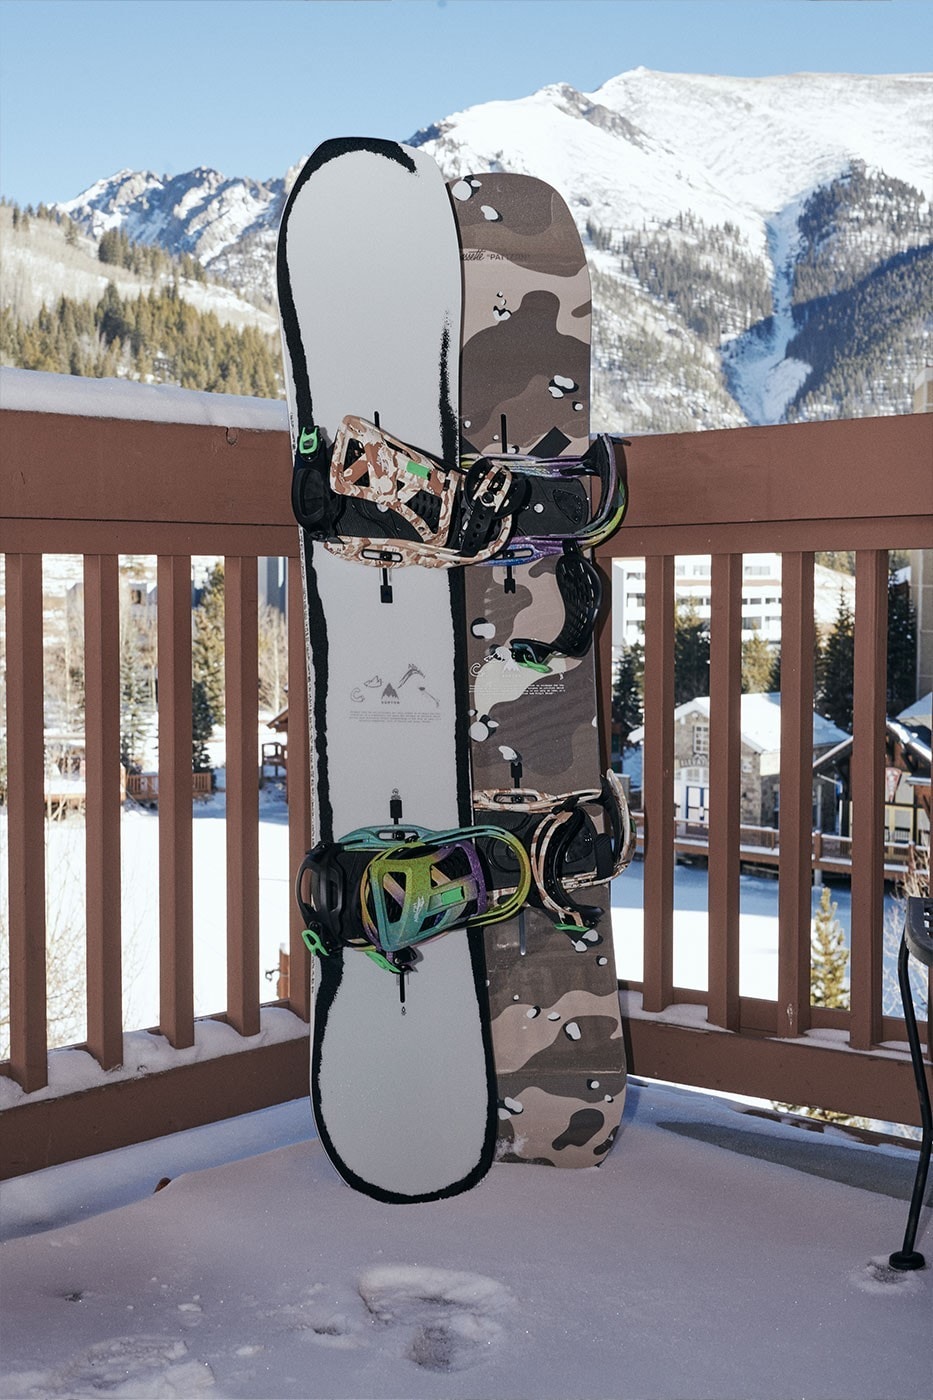 Burton x Virgil Abloh 最新聯名滑雪裝備系列正式登场